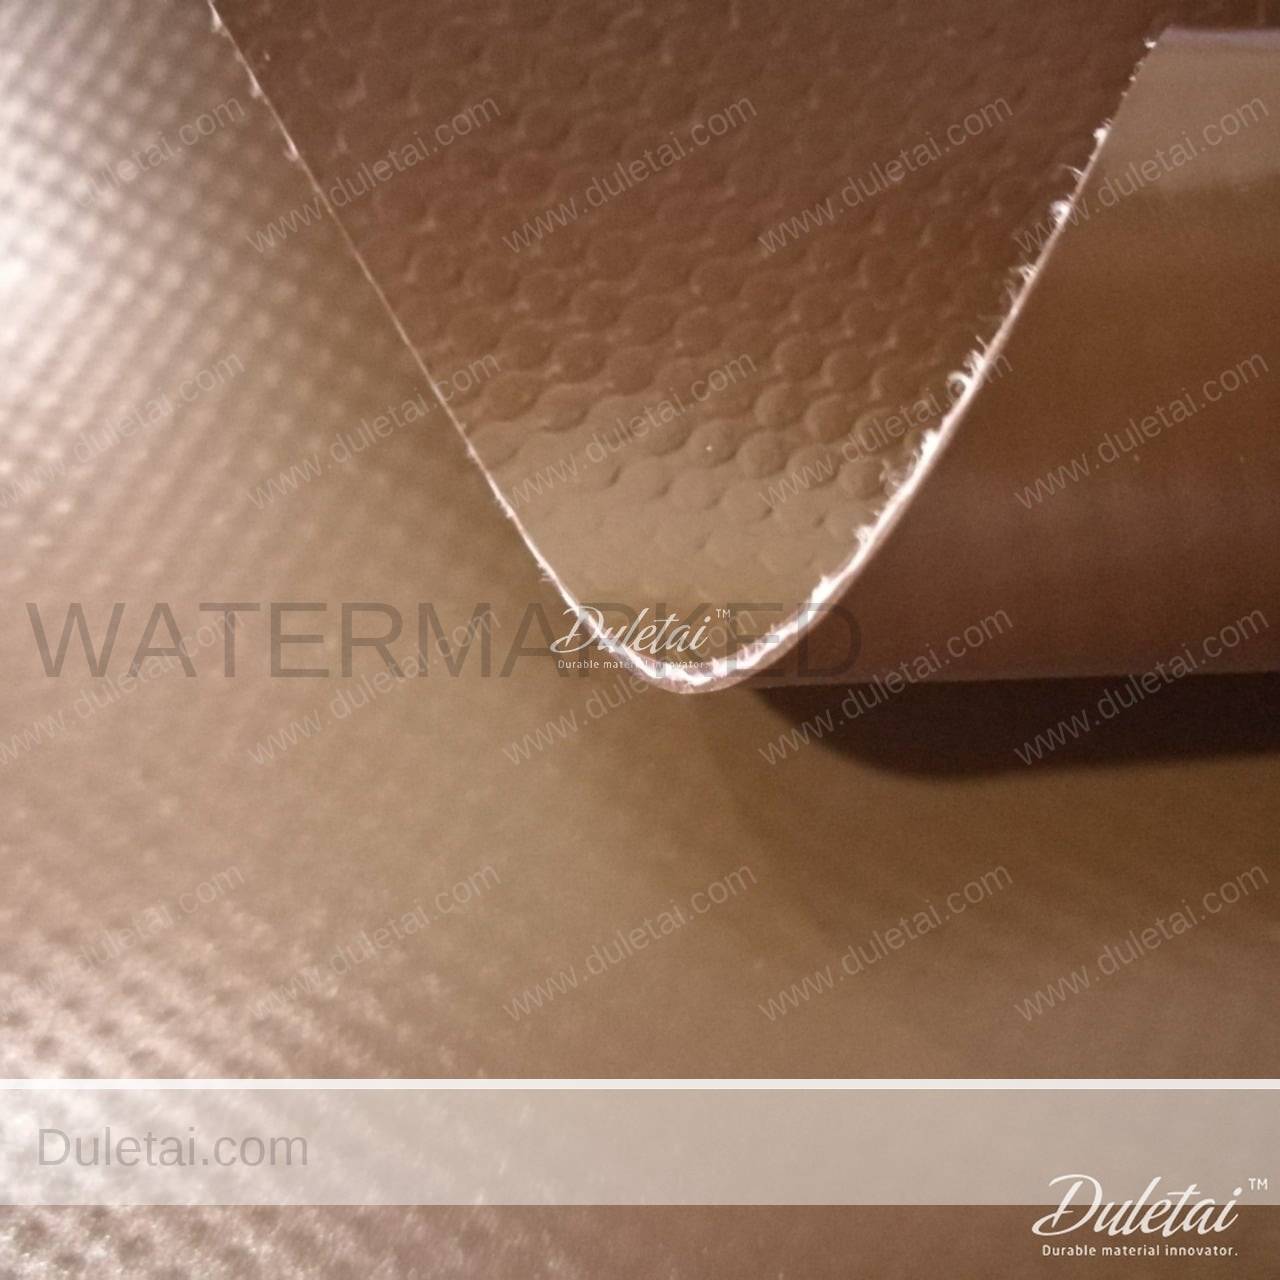 water storage bag material